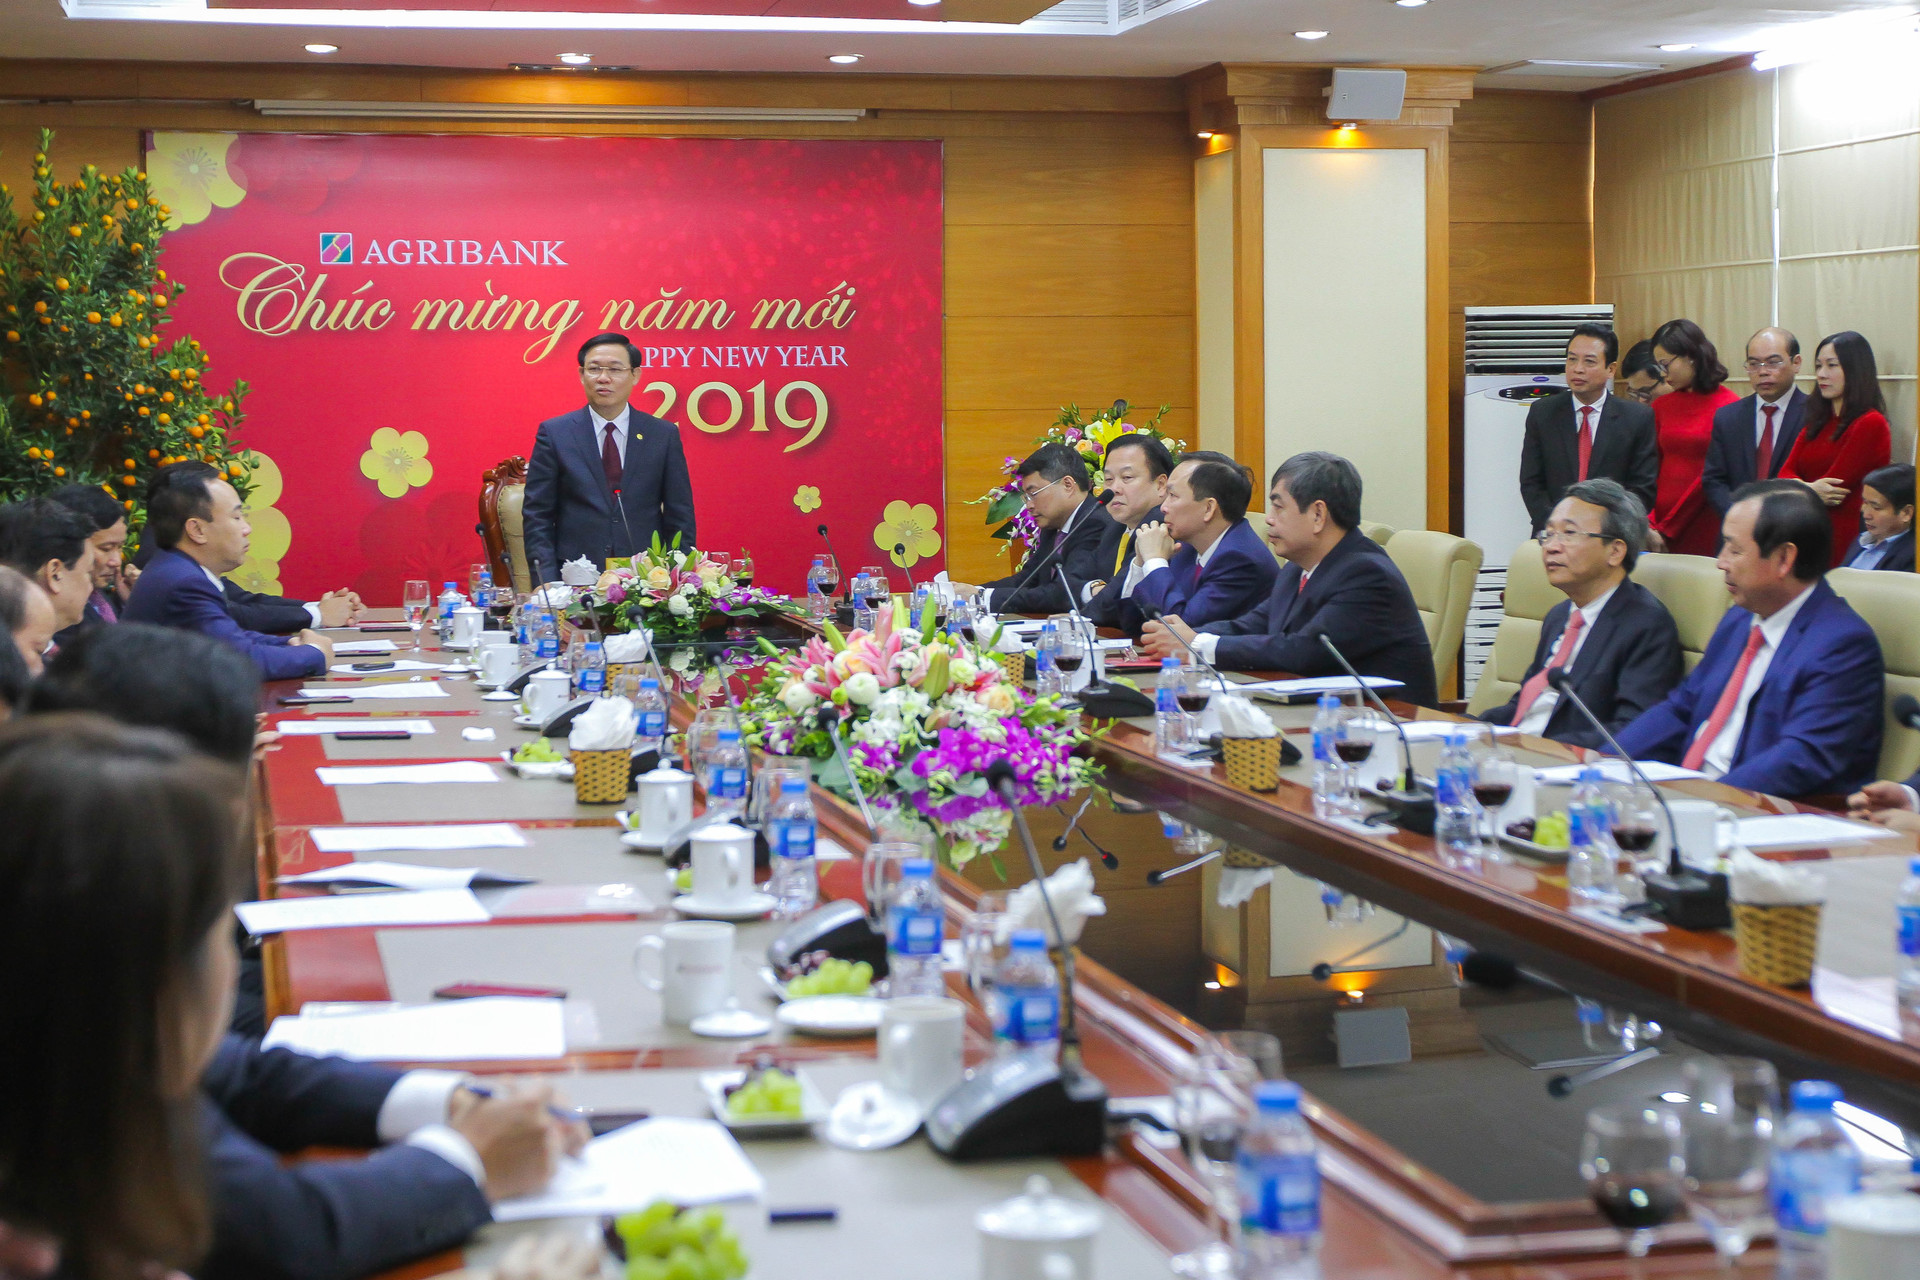 Phó Thủ tướng Vương Đình Huệ: Mong muốn Agribank tiếp tục có nhiều đóng góp to lớn cho “Tam nông” và nền kinh tế đất nước